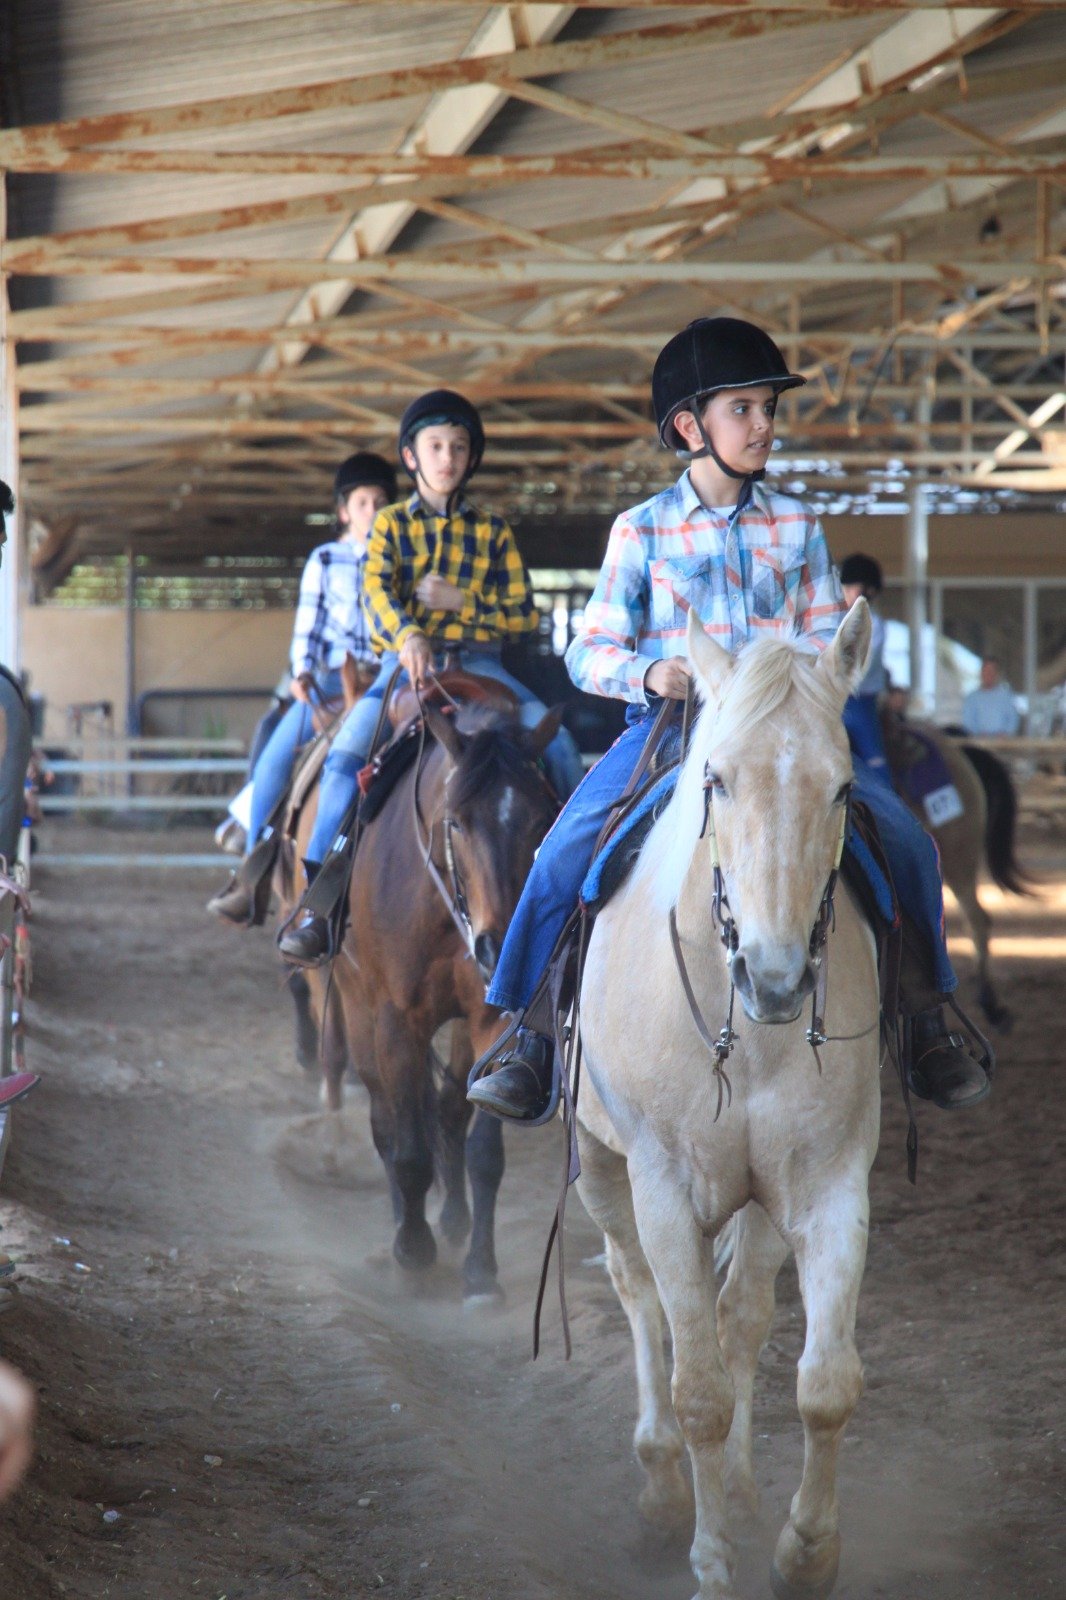 نتائج مشرفة ورائعة يسجلها طلاب مربط ابو ماجد للخيول في ام الفحم خلال مسابقة قطرية في كيبوتس "مجال"-0